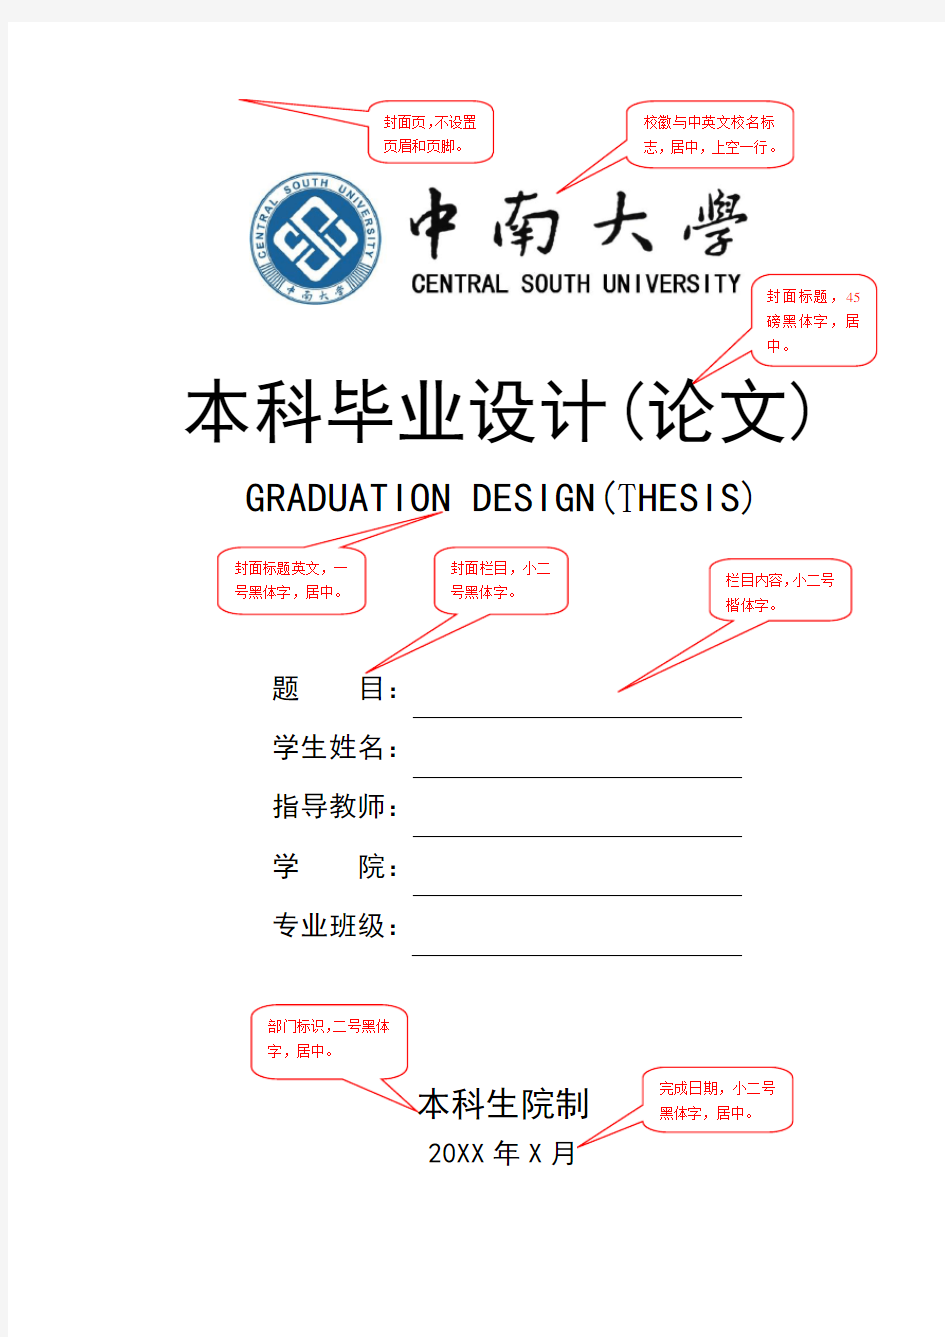 中南大学毕业设计(论文)模版